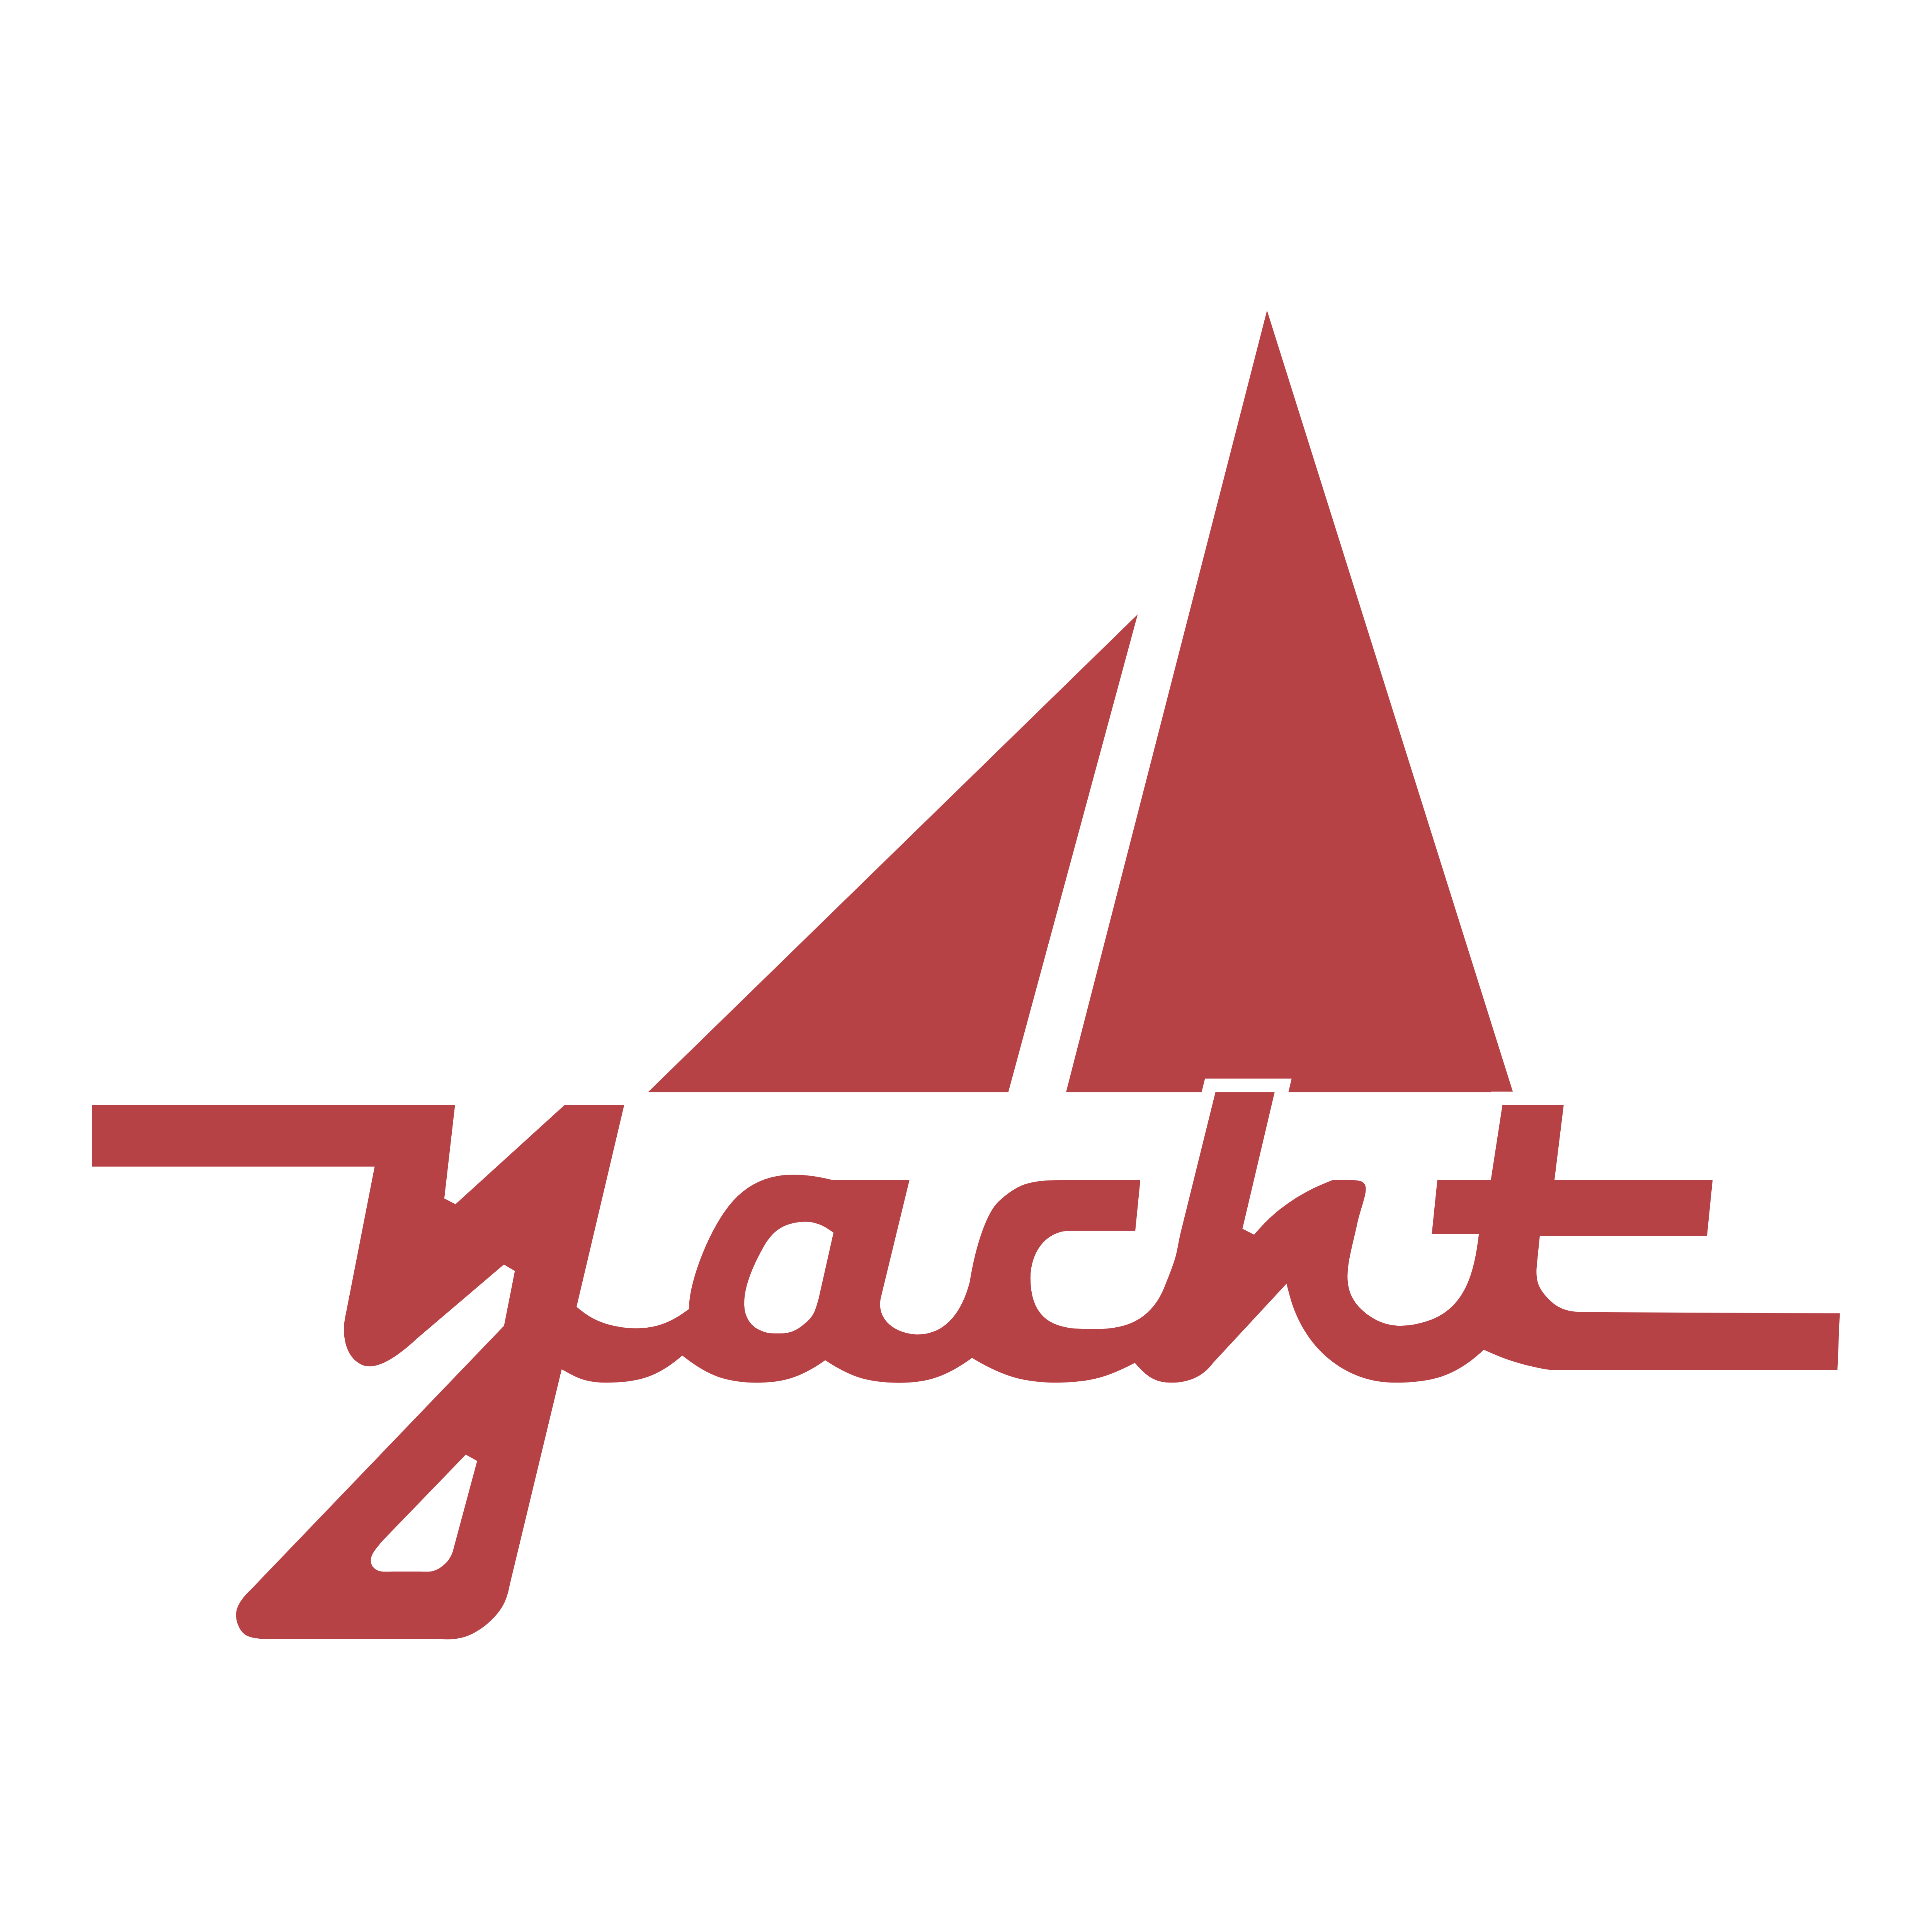 Yatch Logo - Yacht – Logos Download